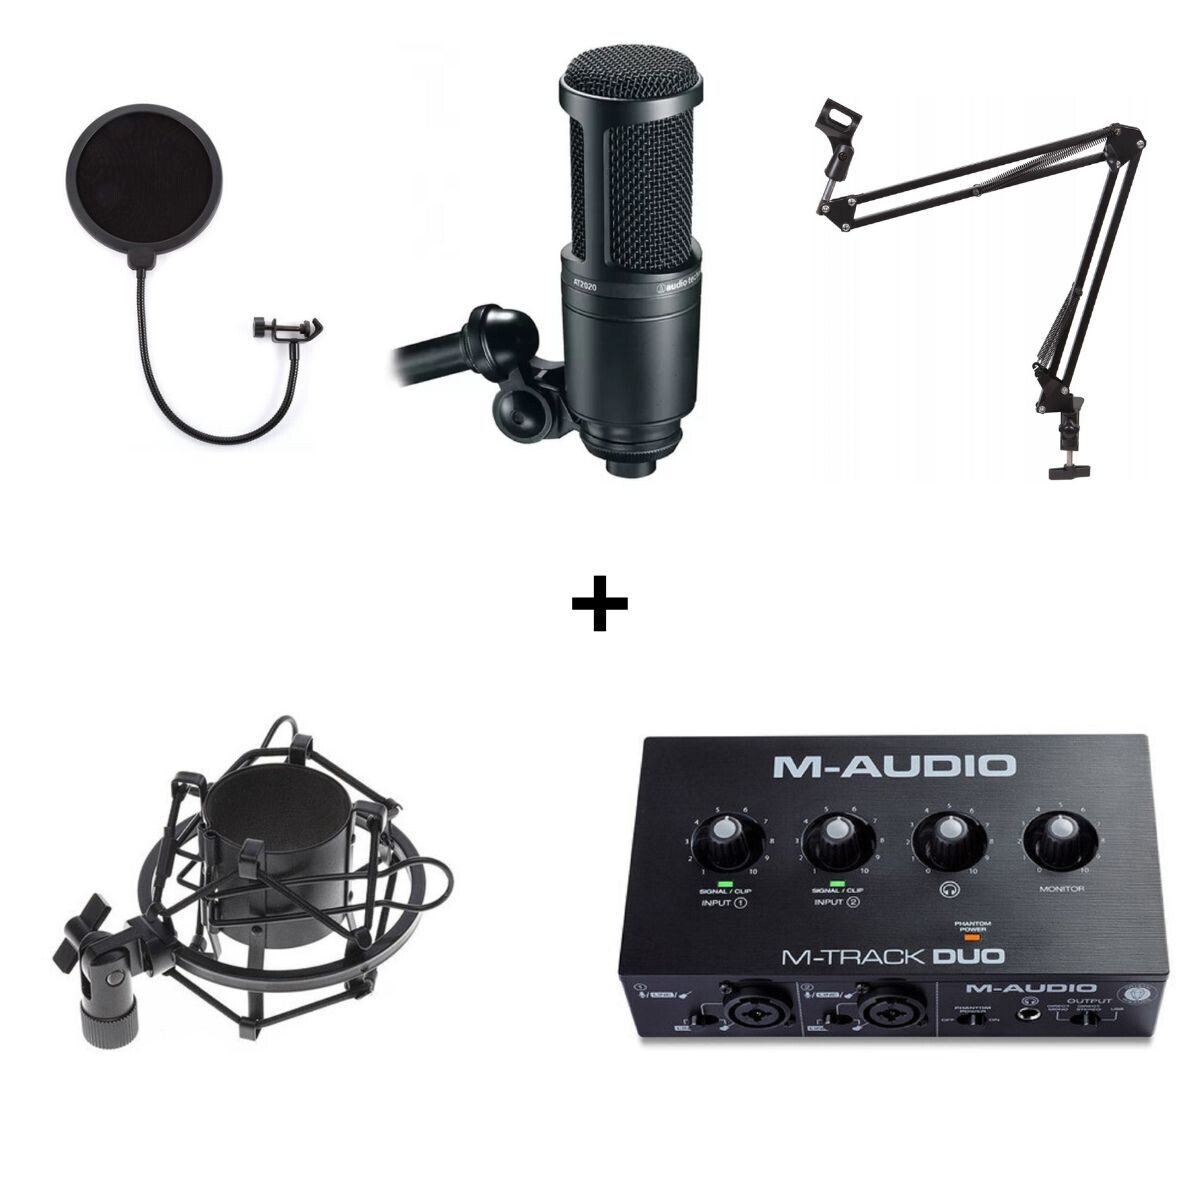 Pack de micrófono + soporte + araña + interfaz de audio + cables